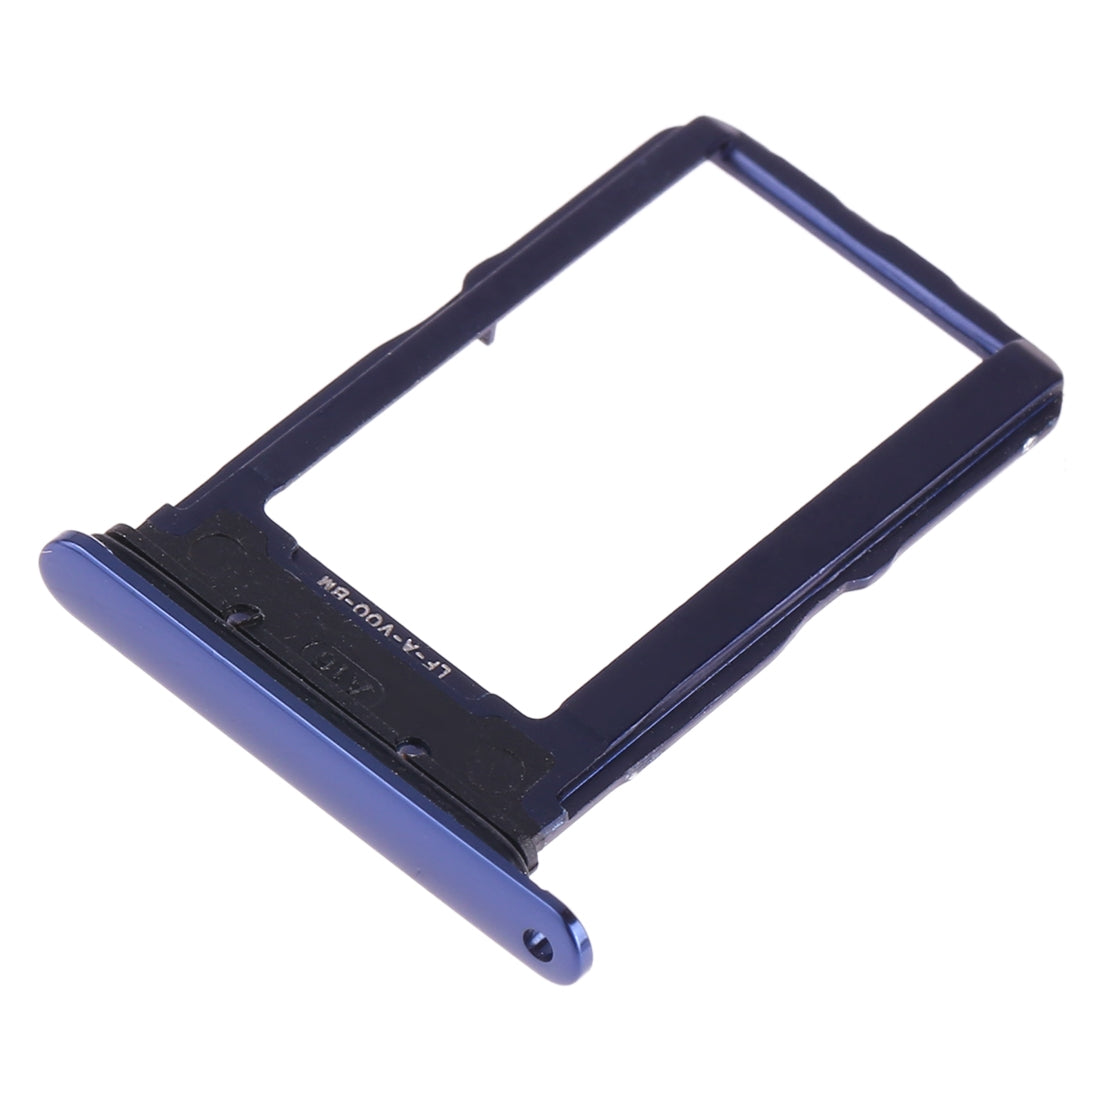 Dual SIM Vivo X27 Blue SIM Holder Tray